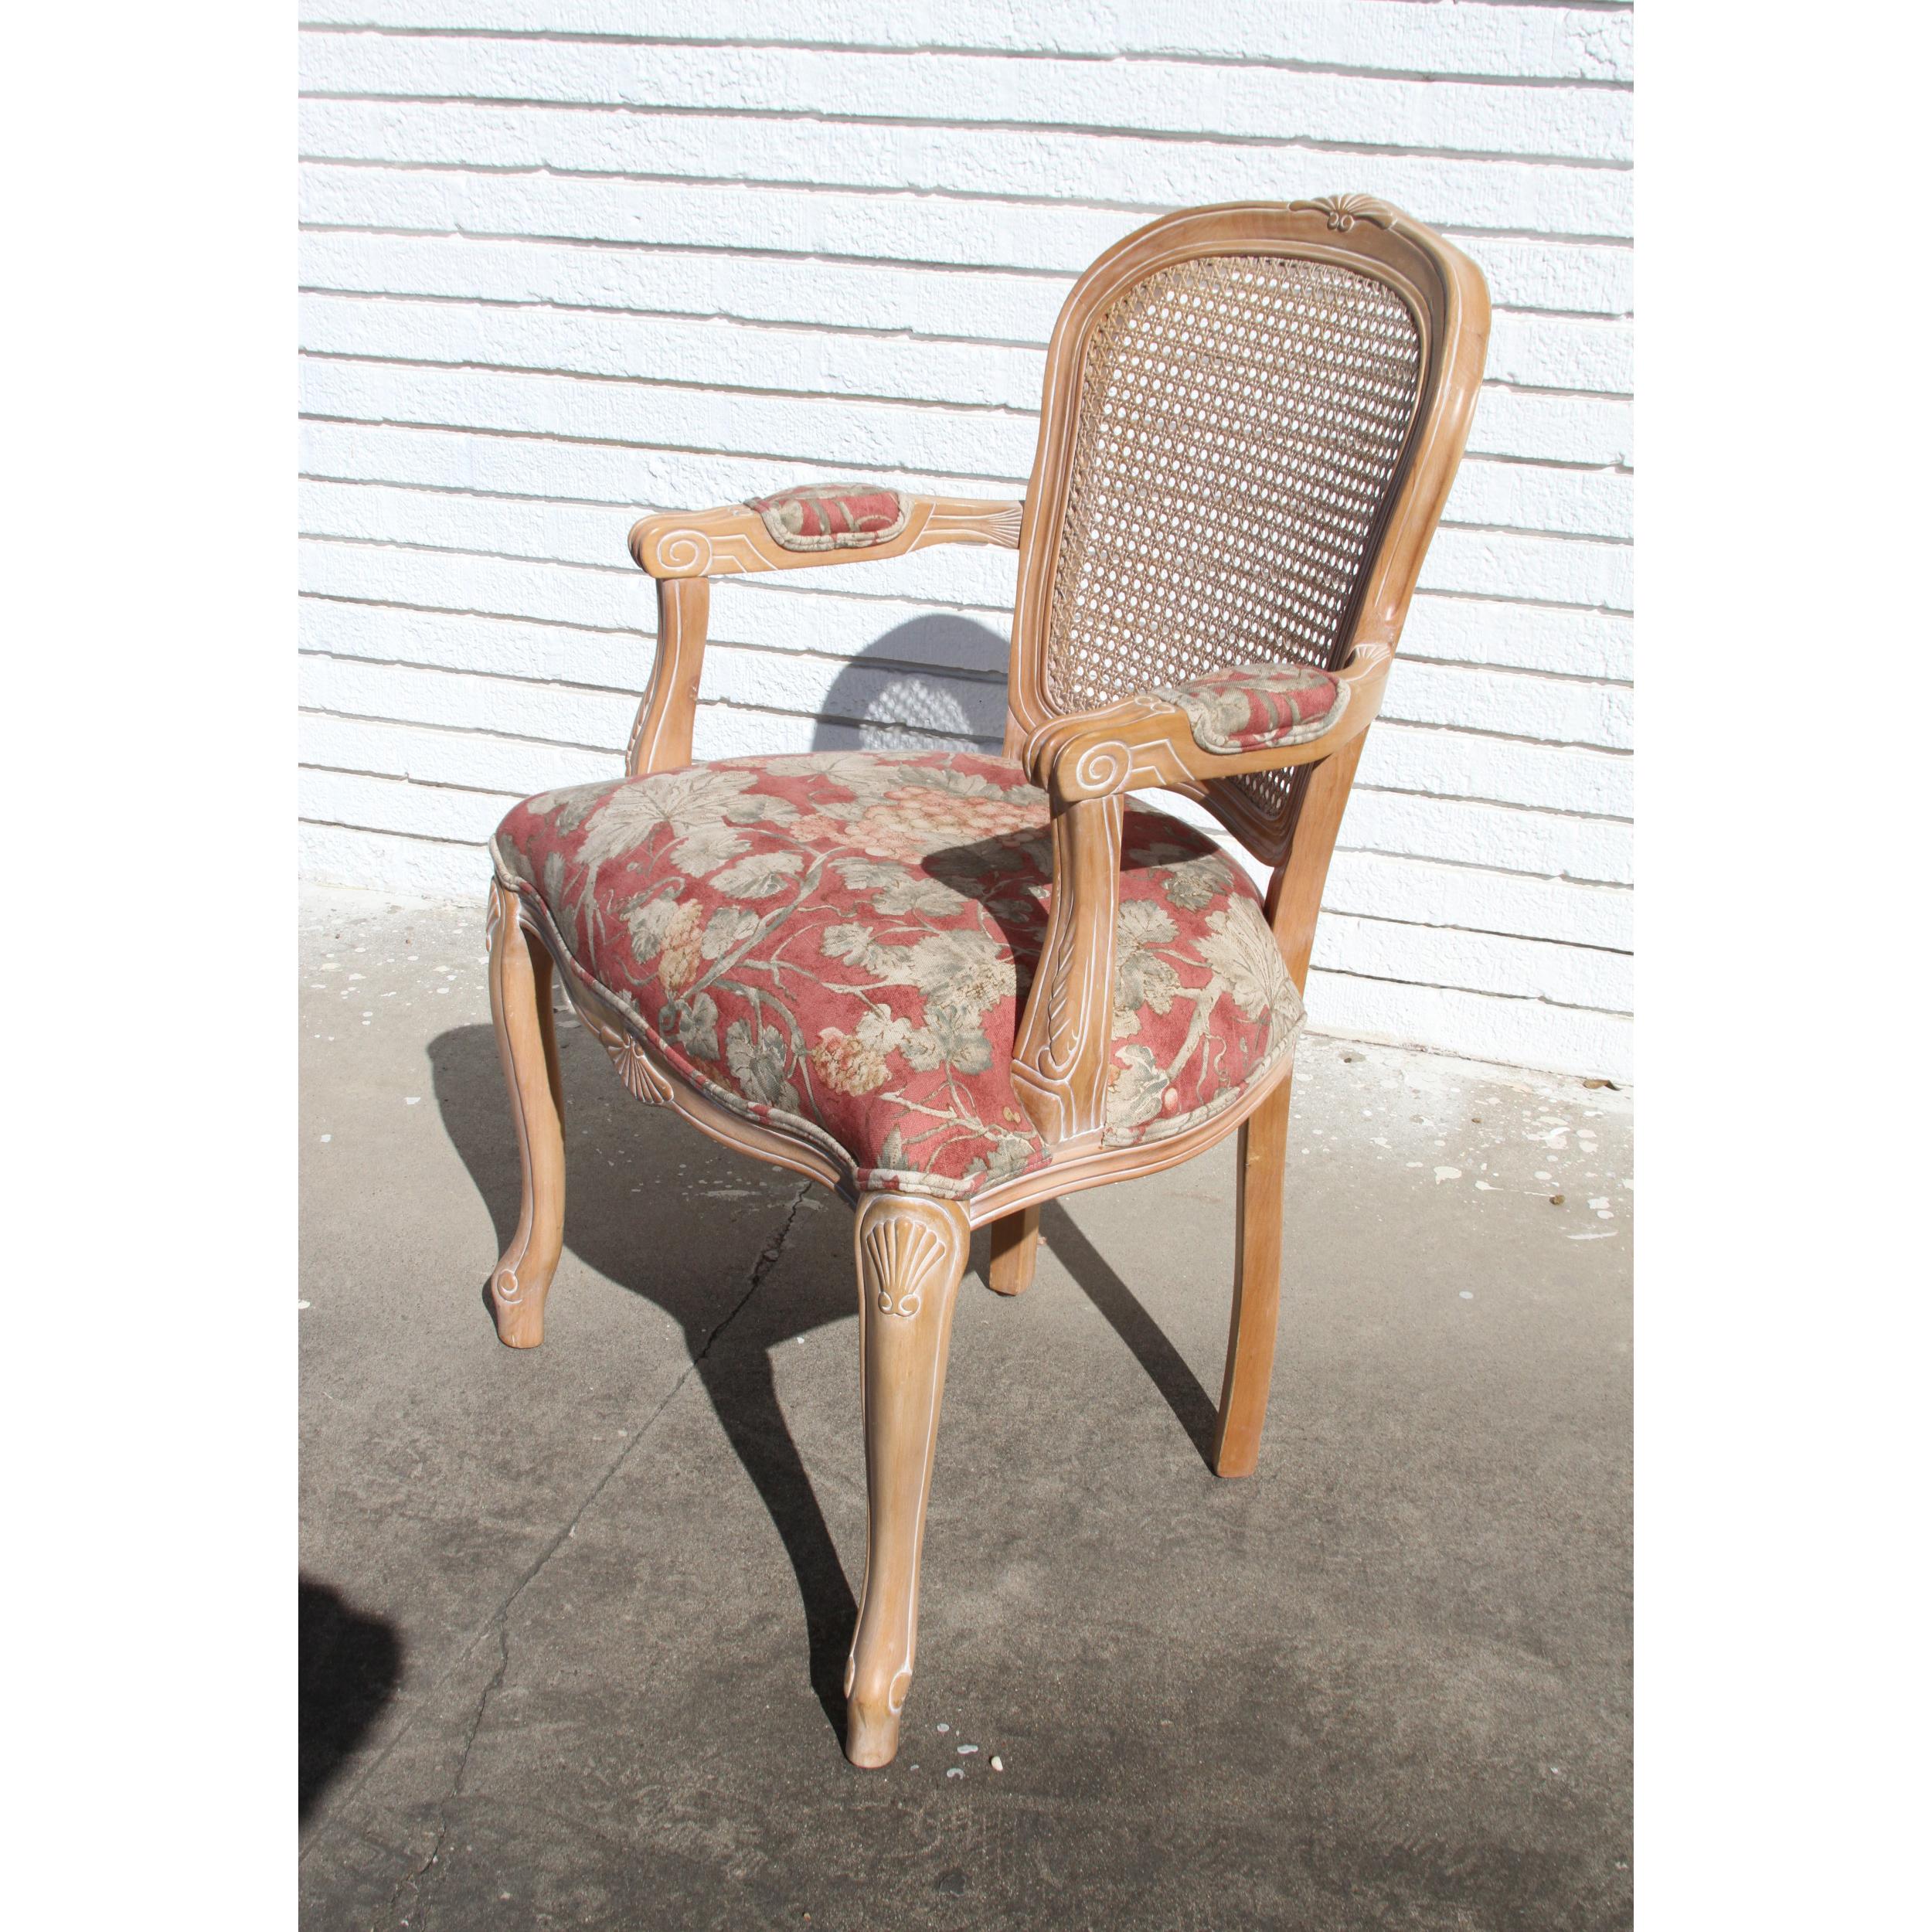 Schöner französischer Stil floral side chair-cane back, floral print Stoff in gedämpften Tönen, zart geschnitzt und Akzent hellen Holzes.